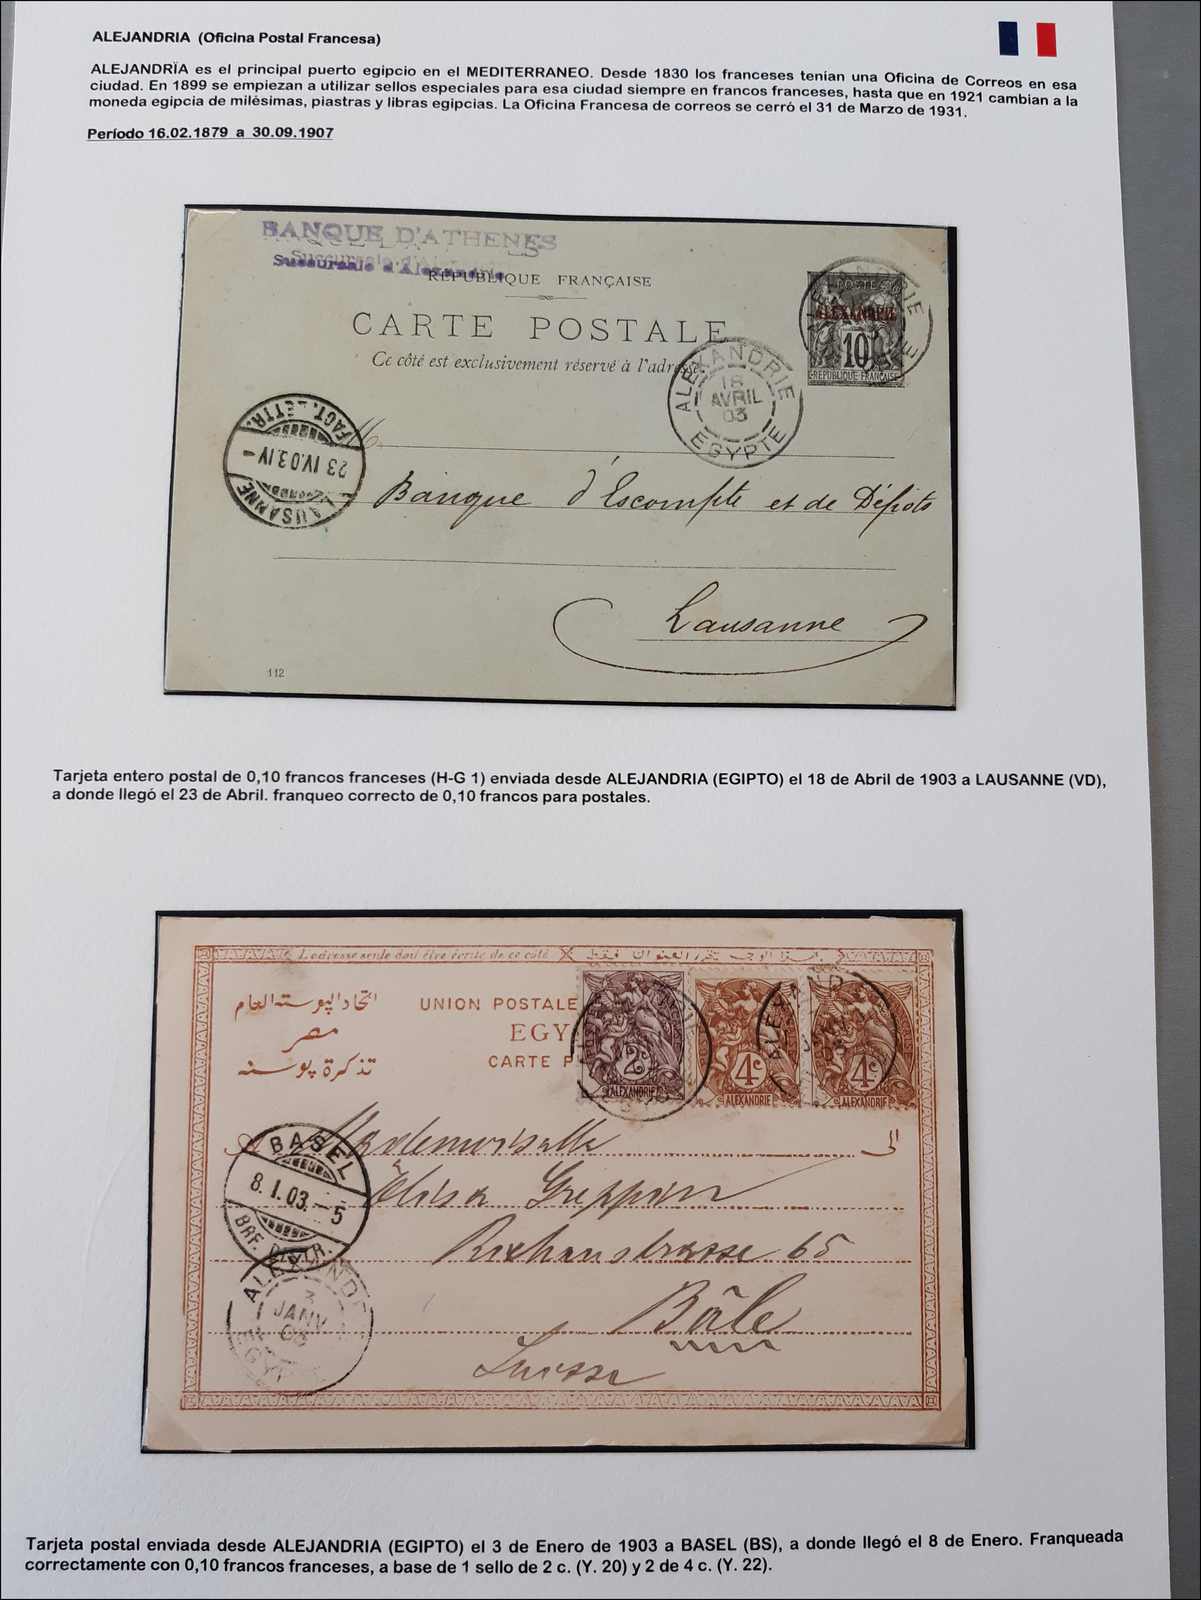 Lot 674 - andere gebiete Ägypten Französsische Postämter -  Rolli Auctions Auction #68 Day 1